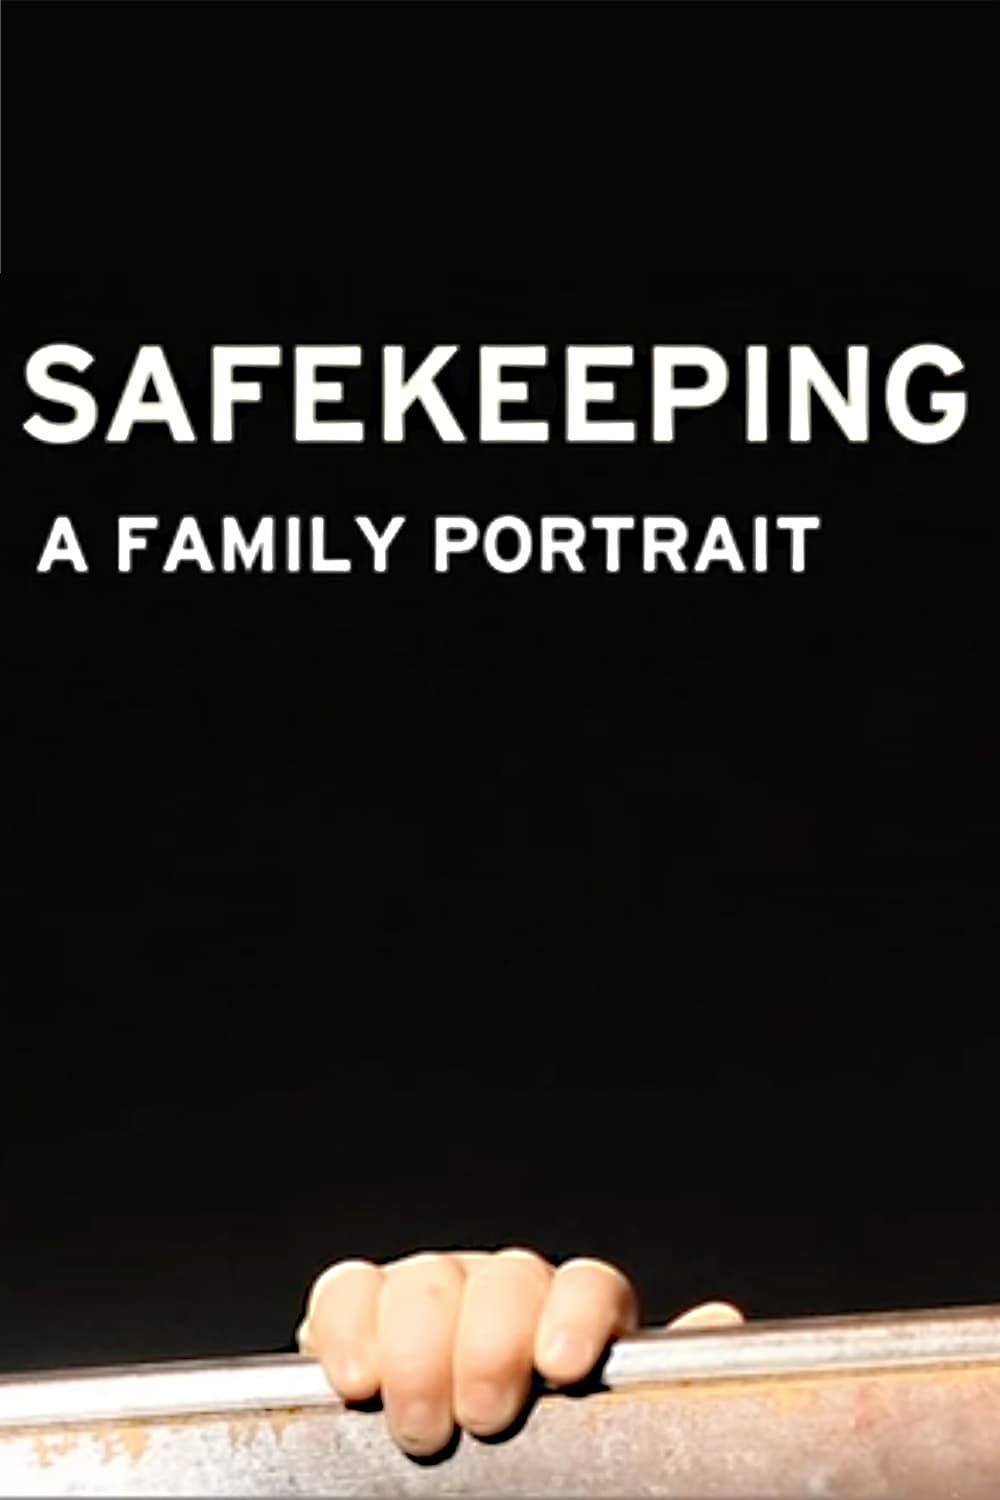 Safekeeping